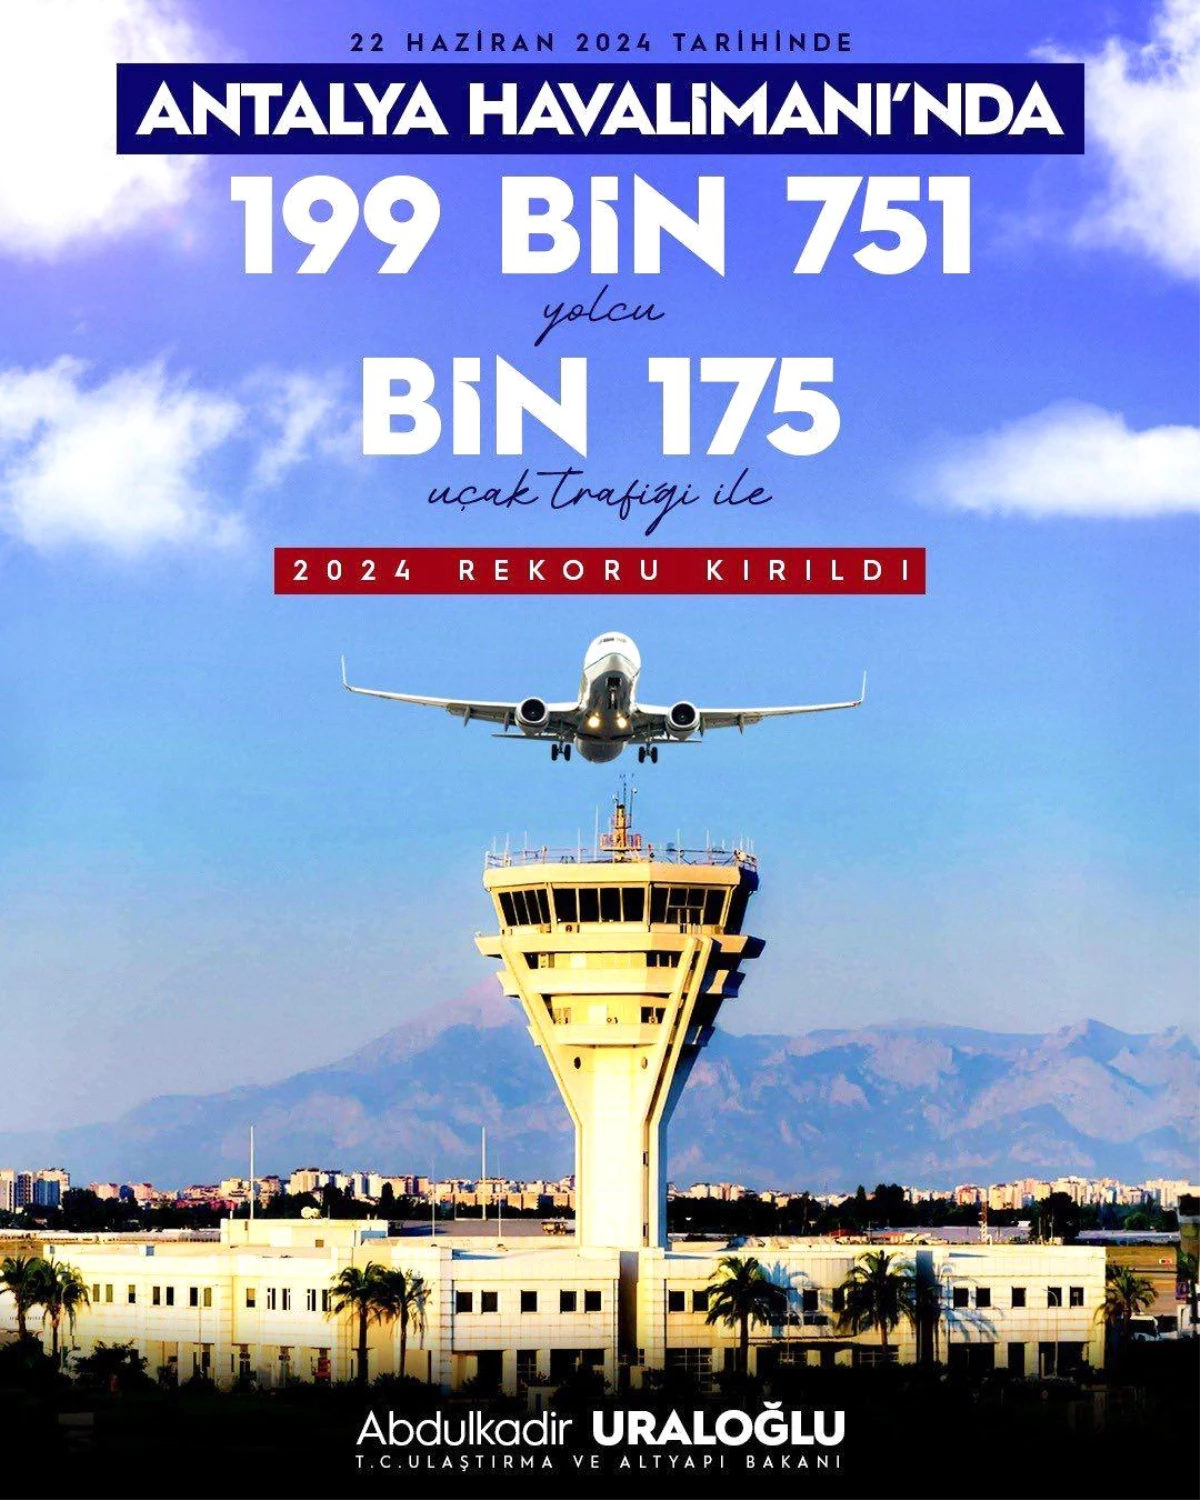 Antalya Havalimanı’nda Yılın En Yüksek Uçuş ve Yolcu Sayıları Kaydedildi